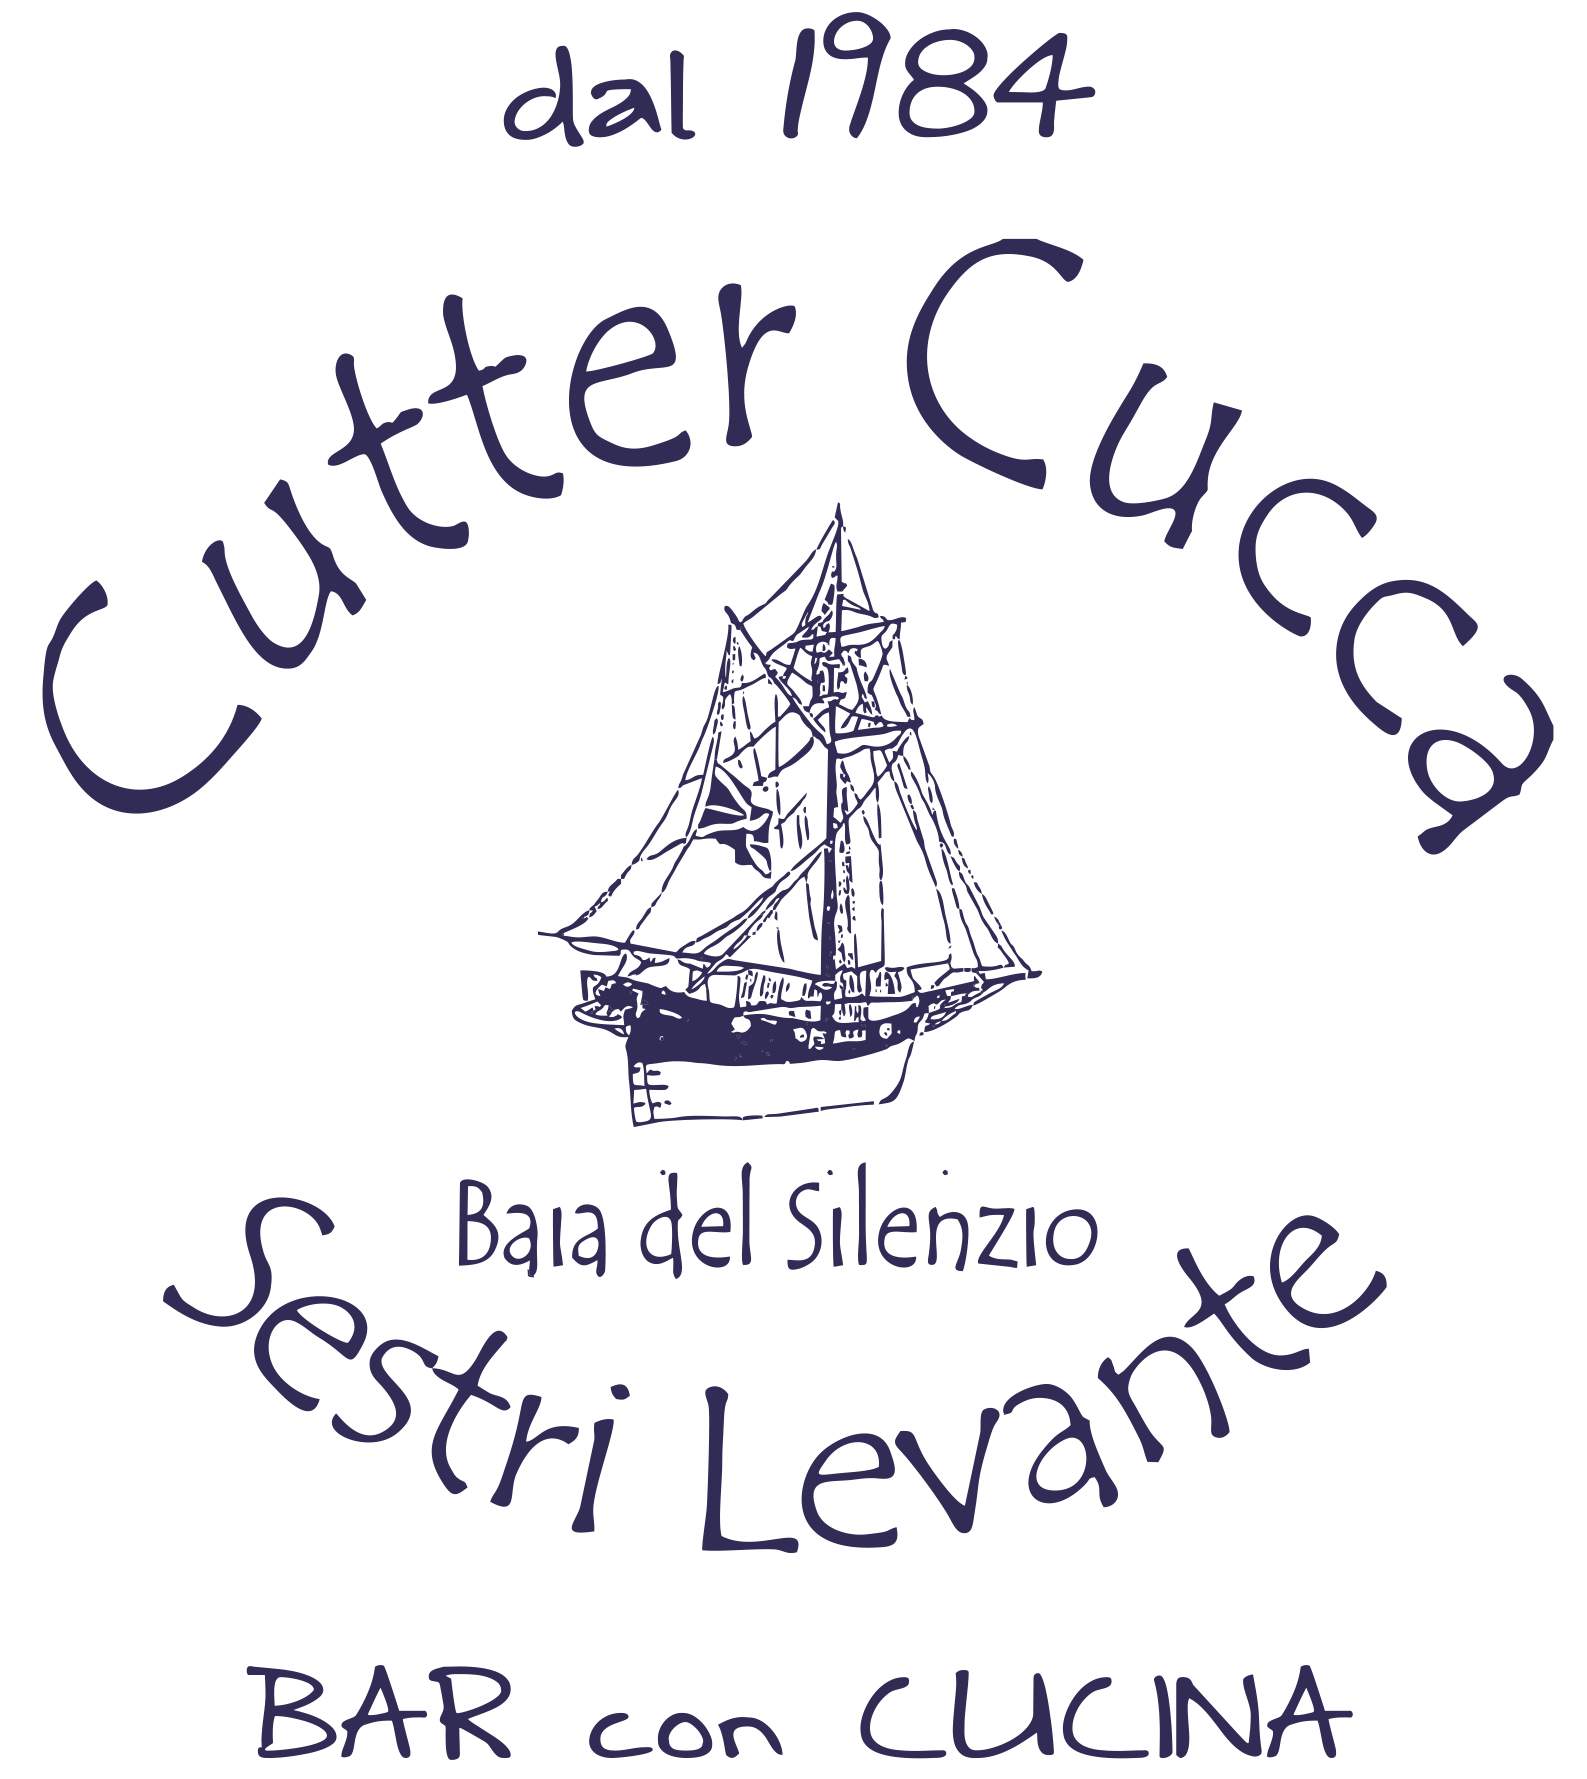 Cutter Cucca